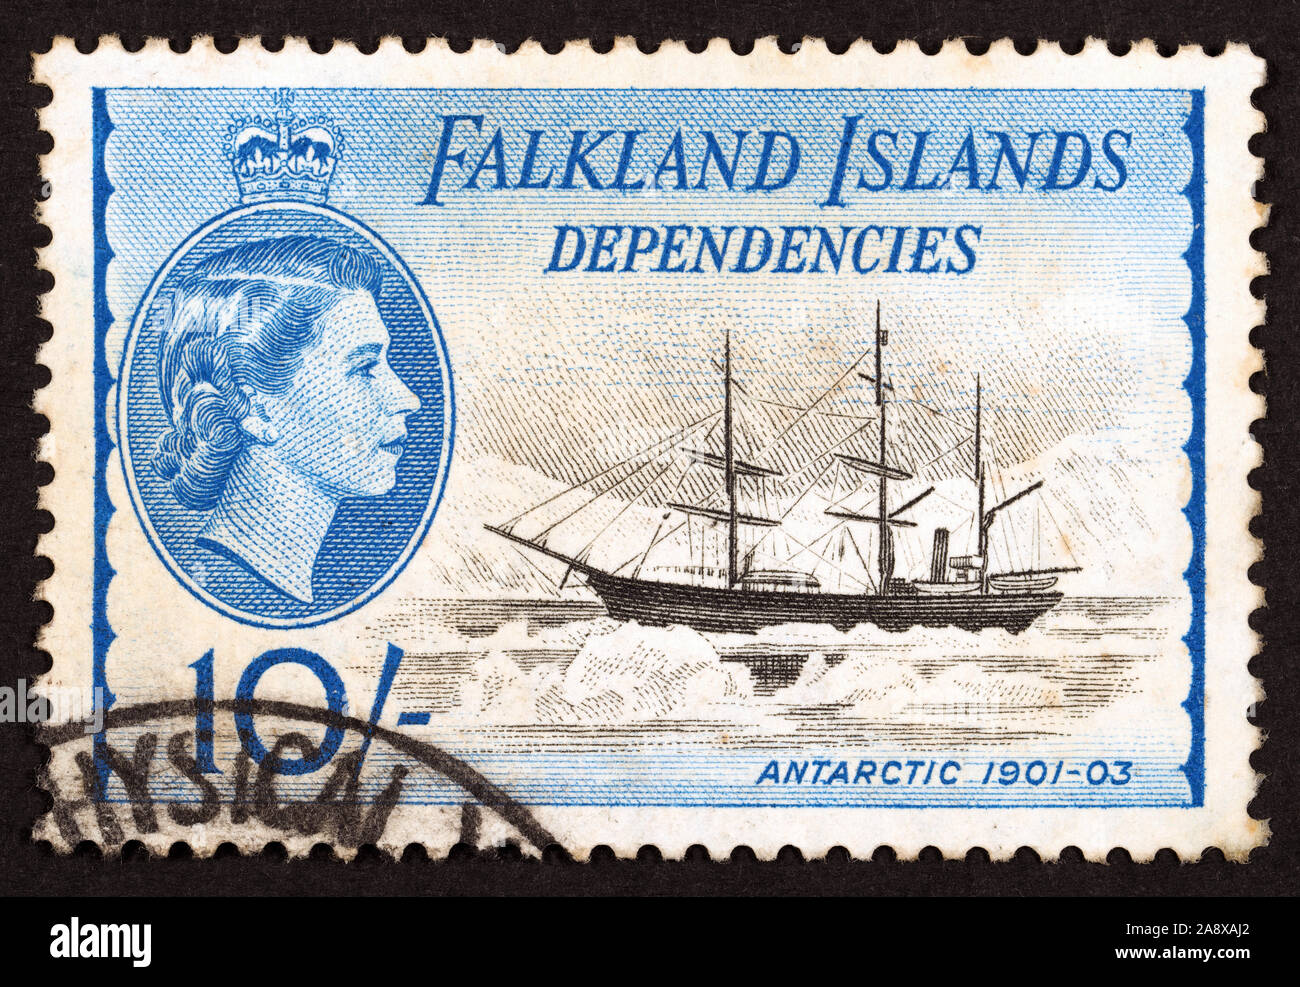 Dépendances Iles Falkland - Timbre-poste avec l'Antarctique, un navire à vapeur construit à Drammen, Norvège en 1871. Banque D'Images